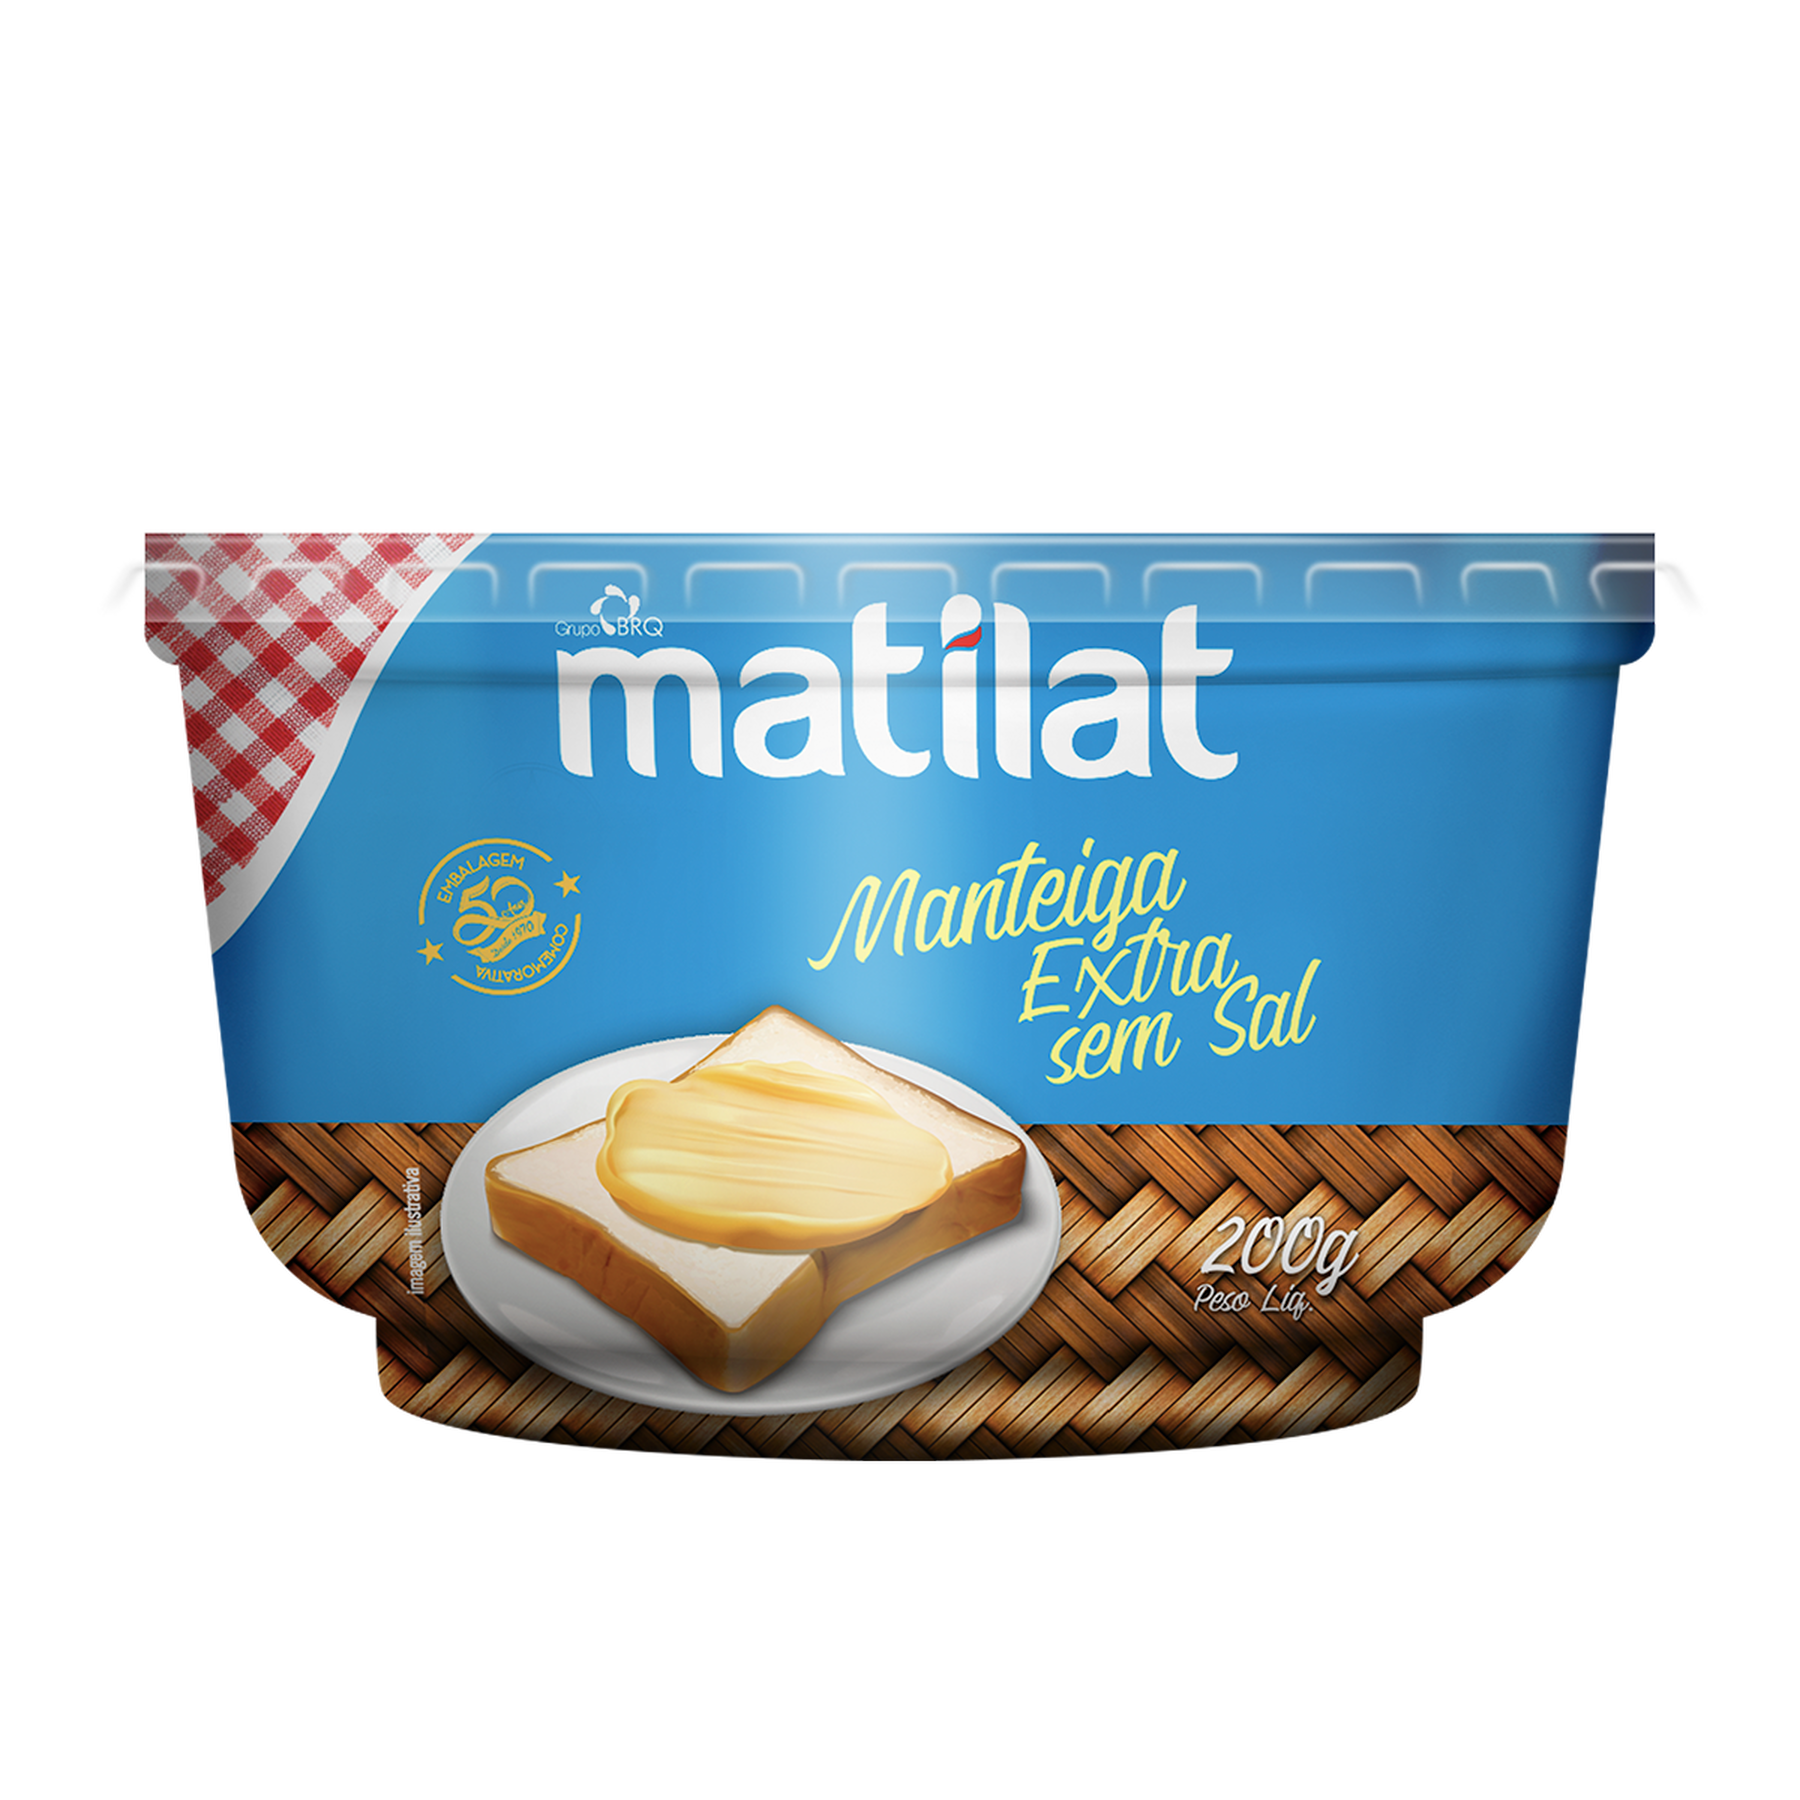 Manteiga Extra sem Sal Matilat Pote 200g